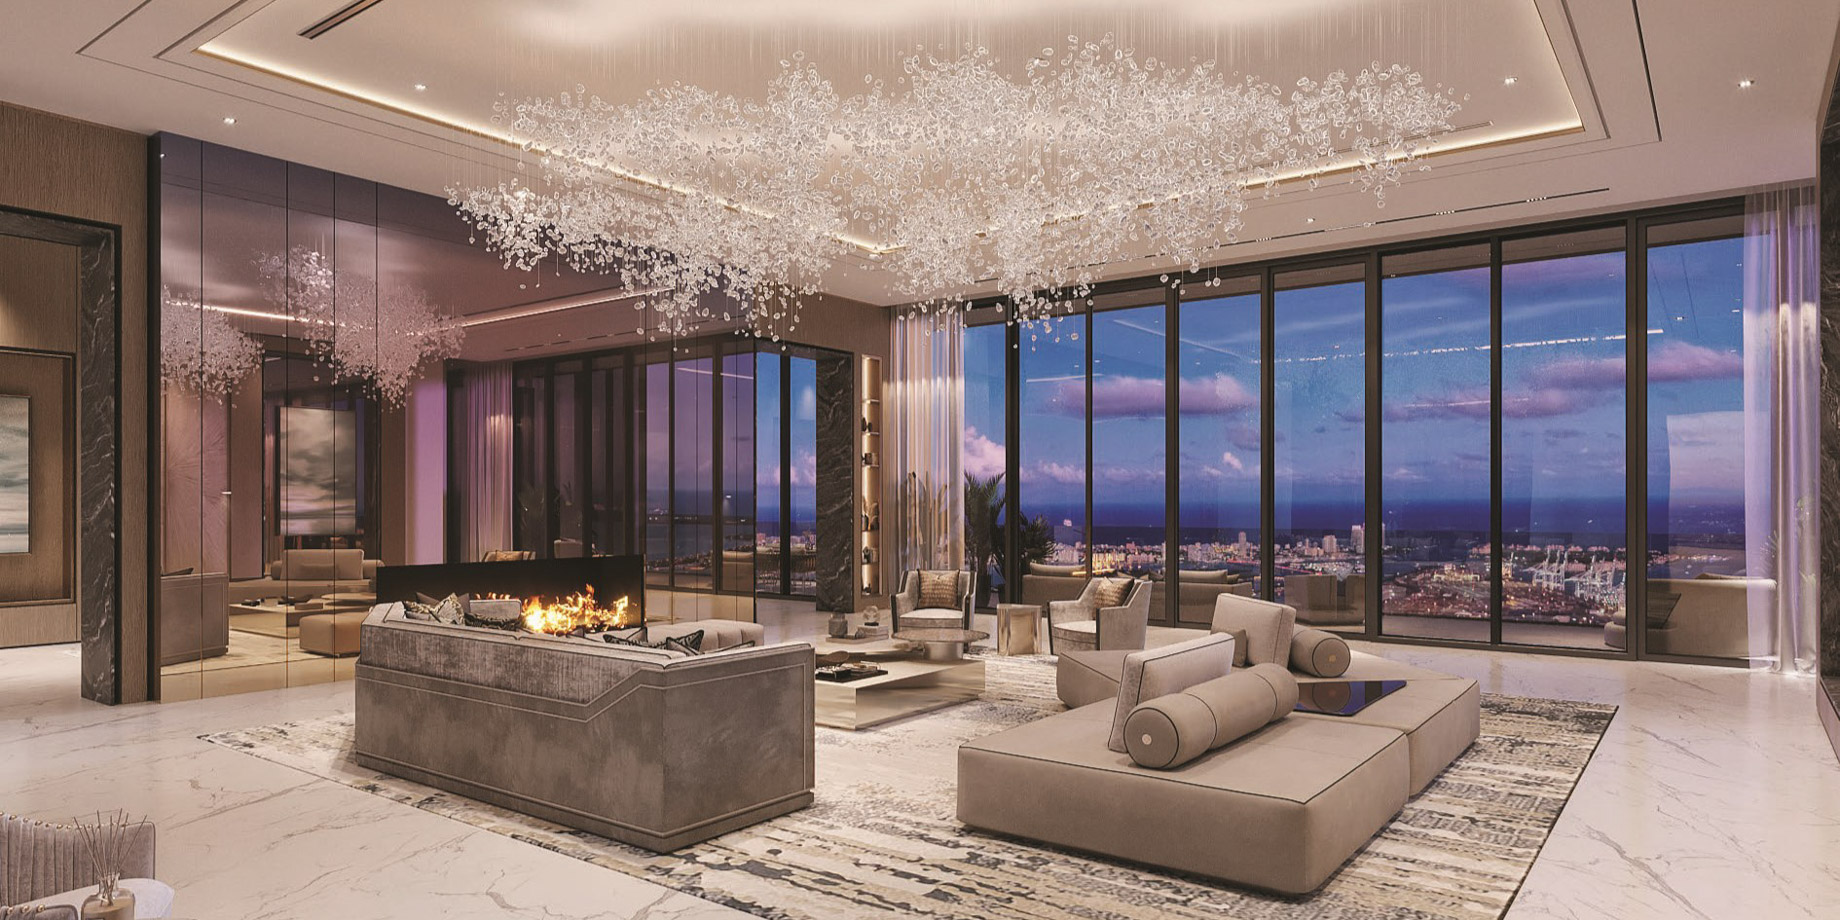 Luxury Condo Interior - Waldorf Astoria Residences - Downtown Miami